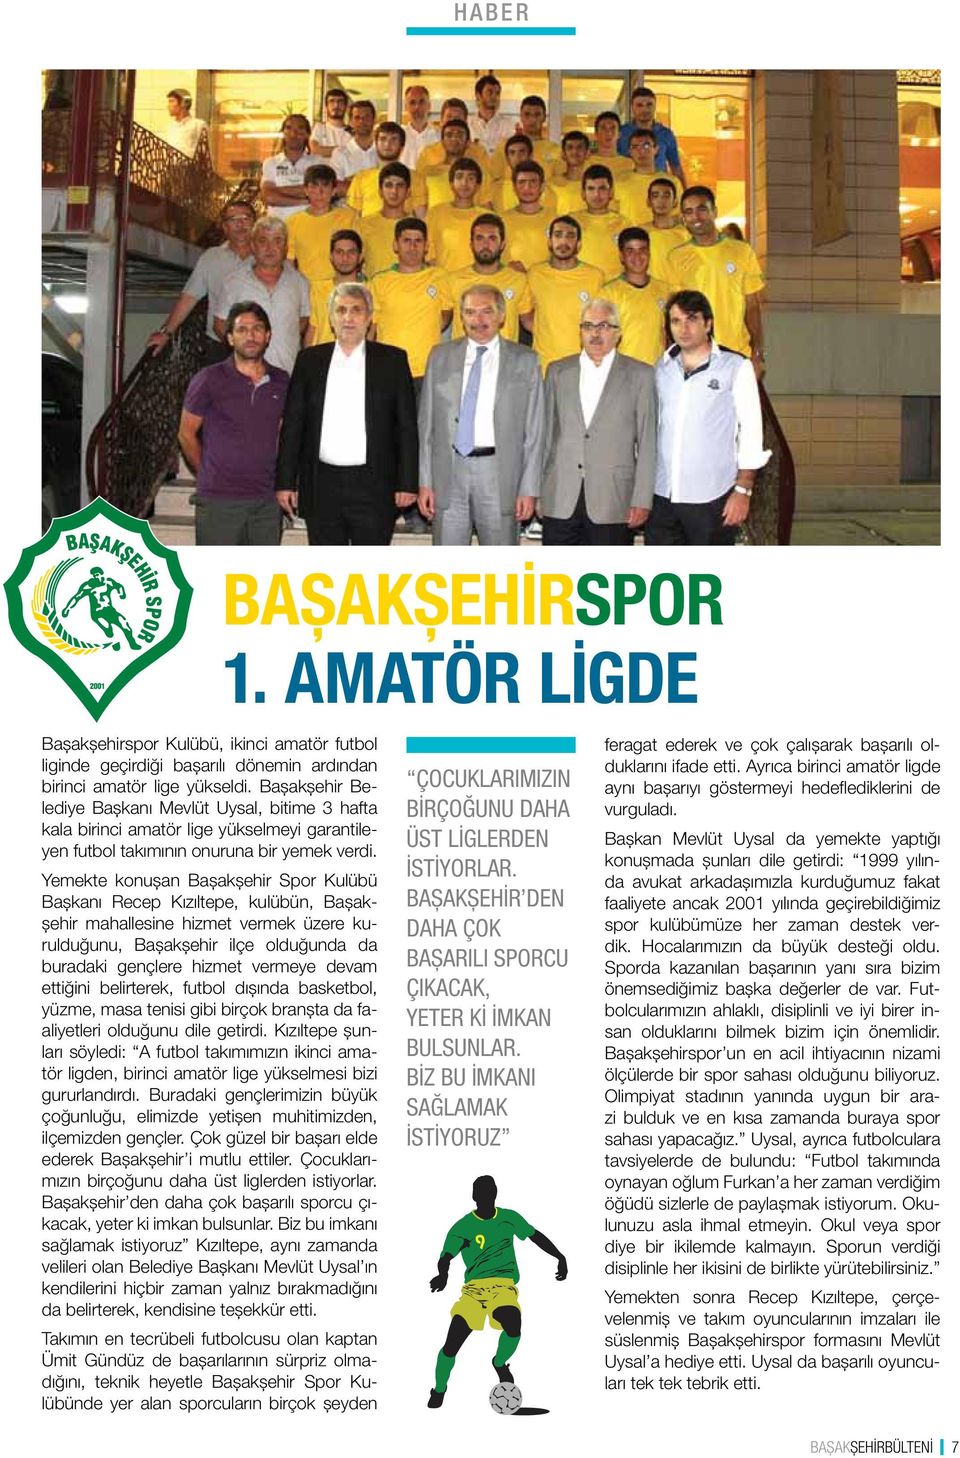 Yemekte konuşan Başakşehir Spor Kulübü Başkanı Recep Kızıltepe, kulübün, Başakşehir mahallesine hizmet vermek üzere kurulduğunu, Başakşehir ilçe olduğunda da buradaki gençlere hizmet vermeye devam